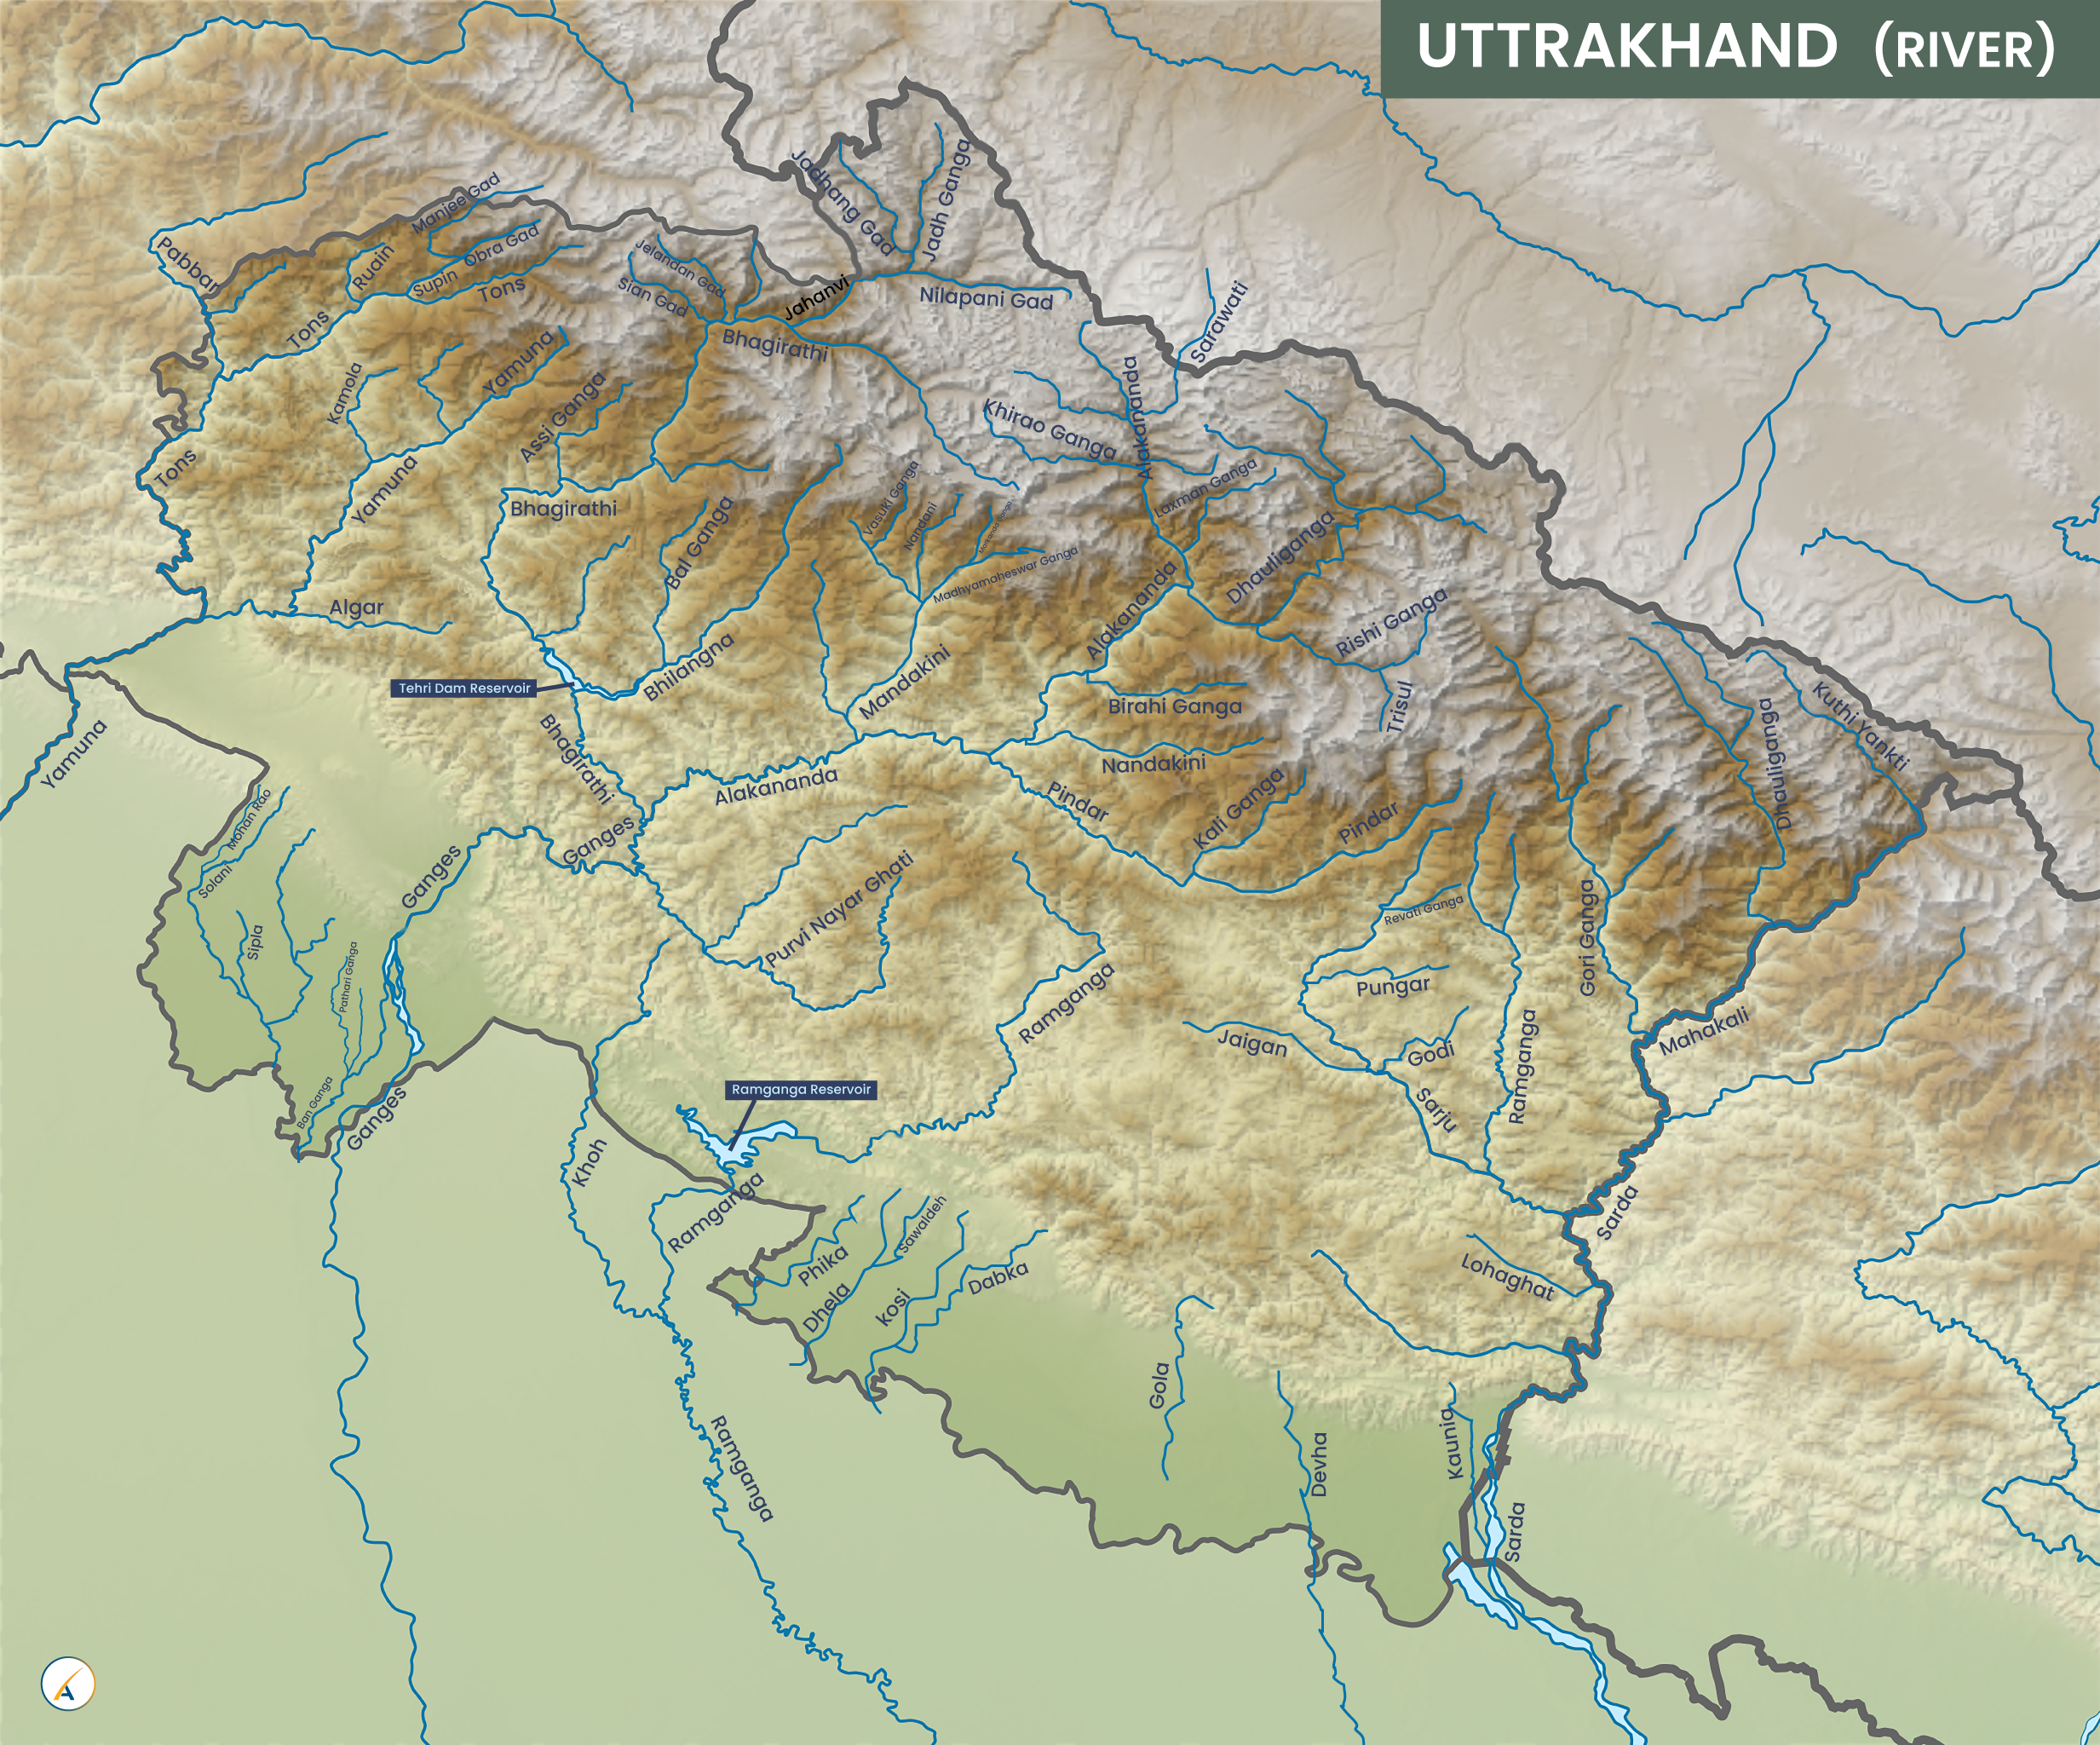 Uttarakhand River Map